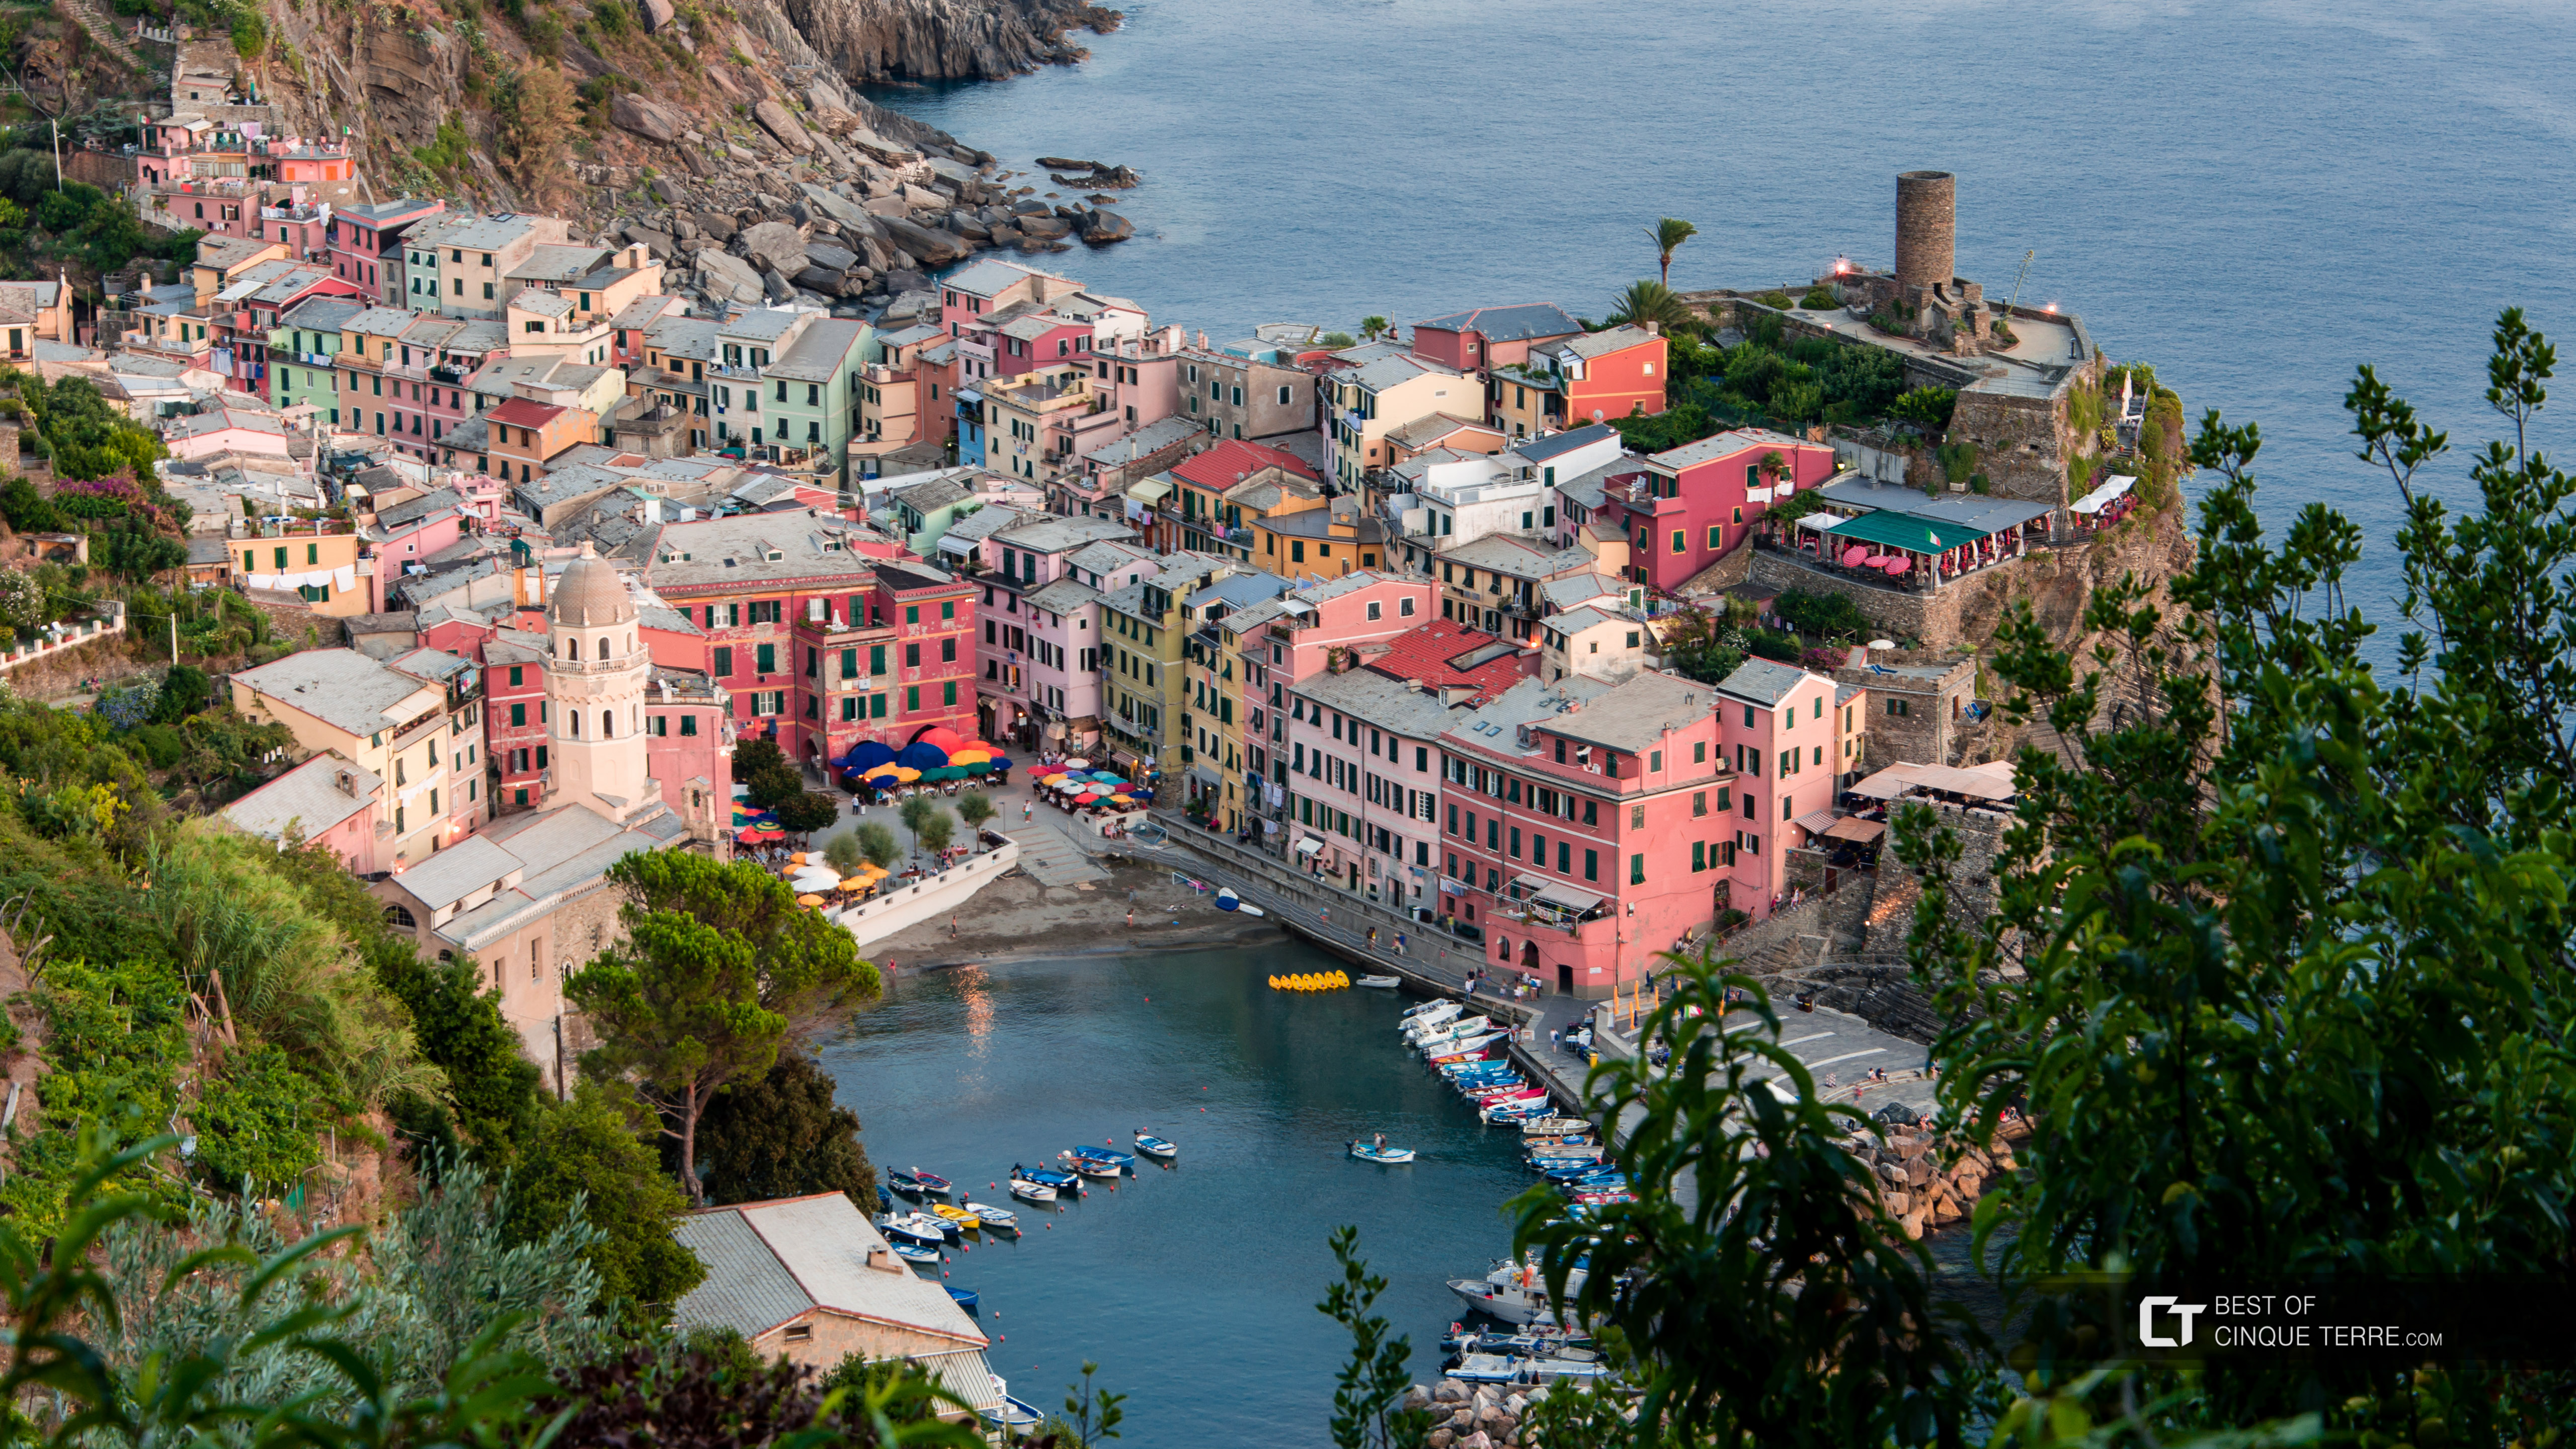 Vista de la bahía desde el Camino Celeste, Vernazza, Cinque Terre, Italia